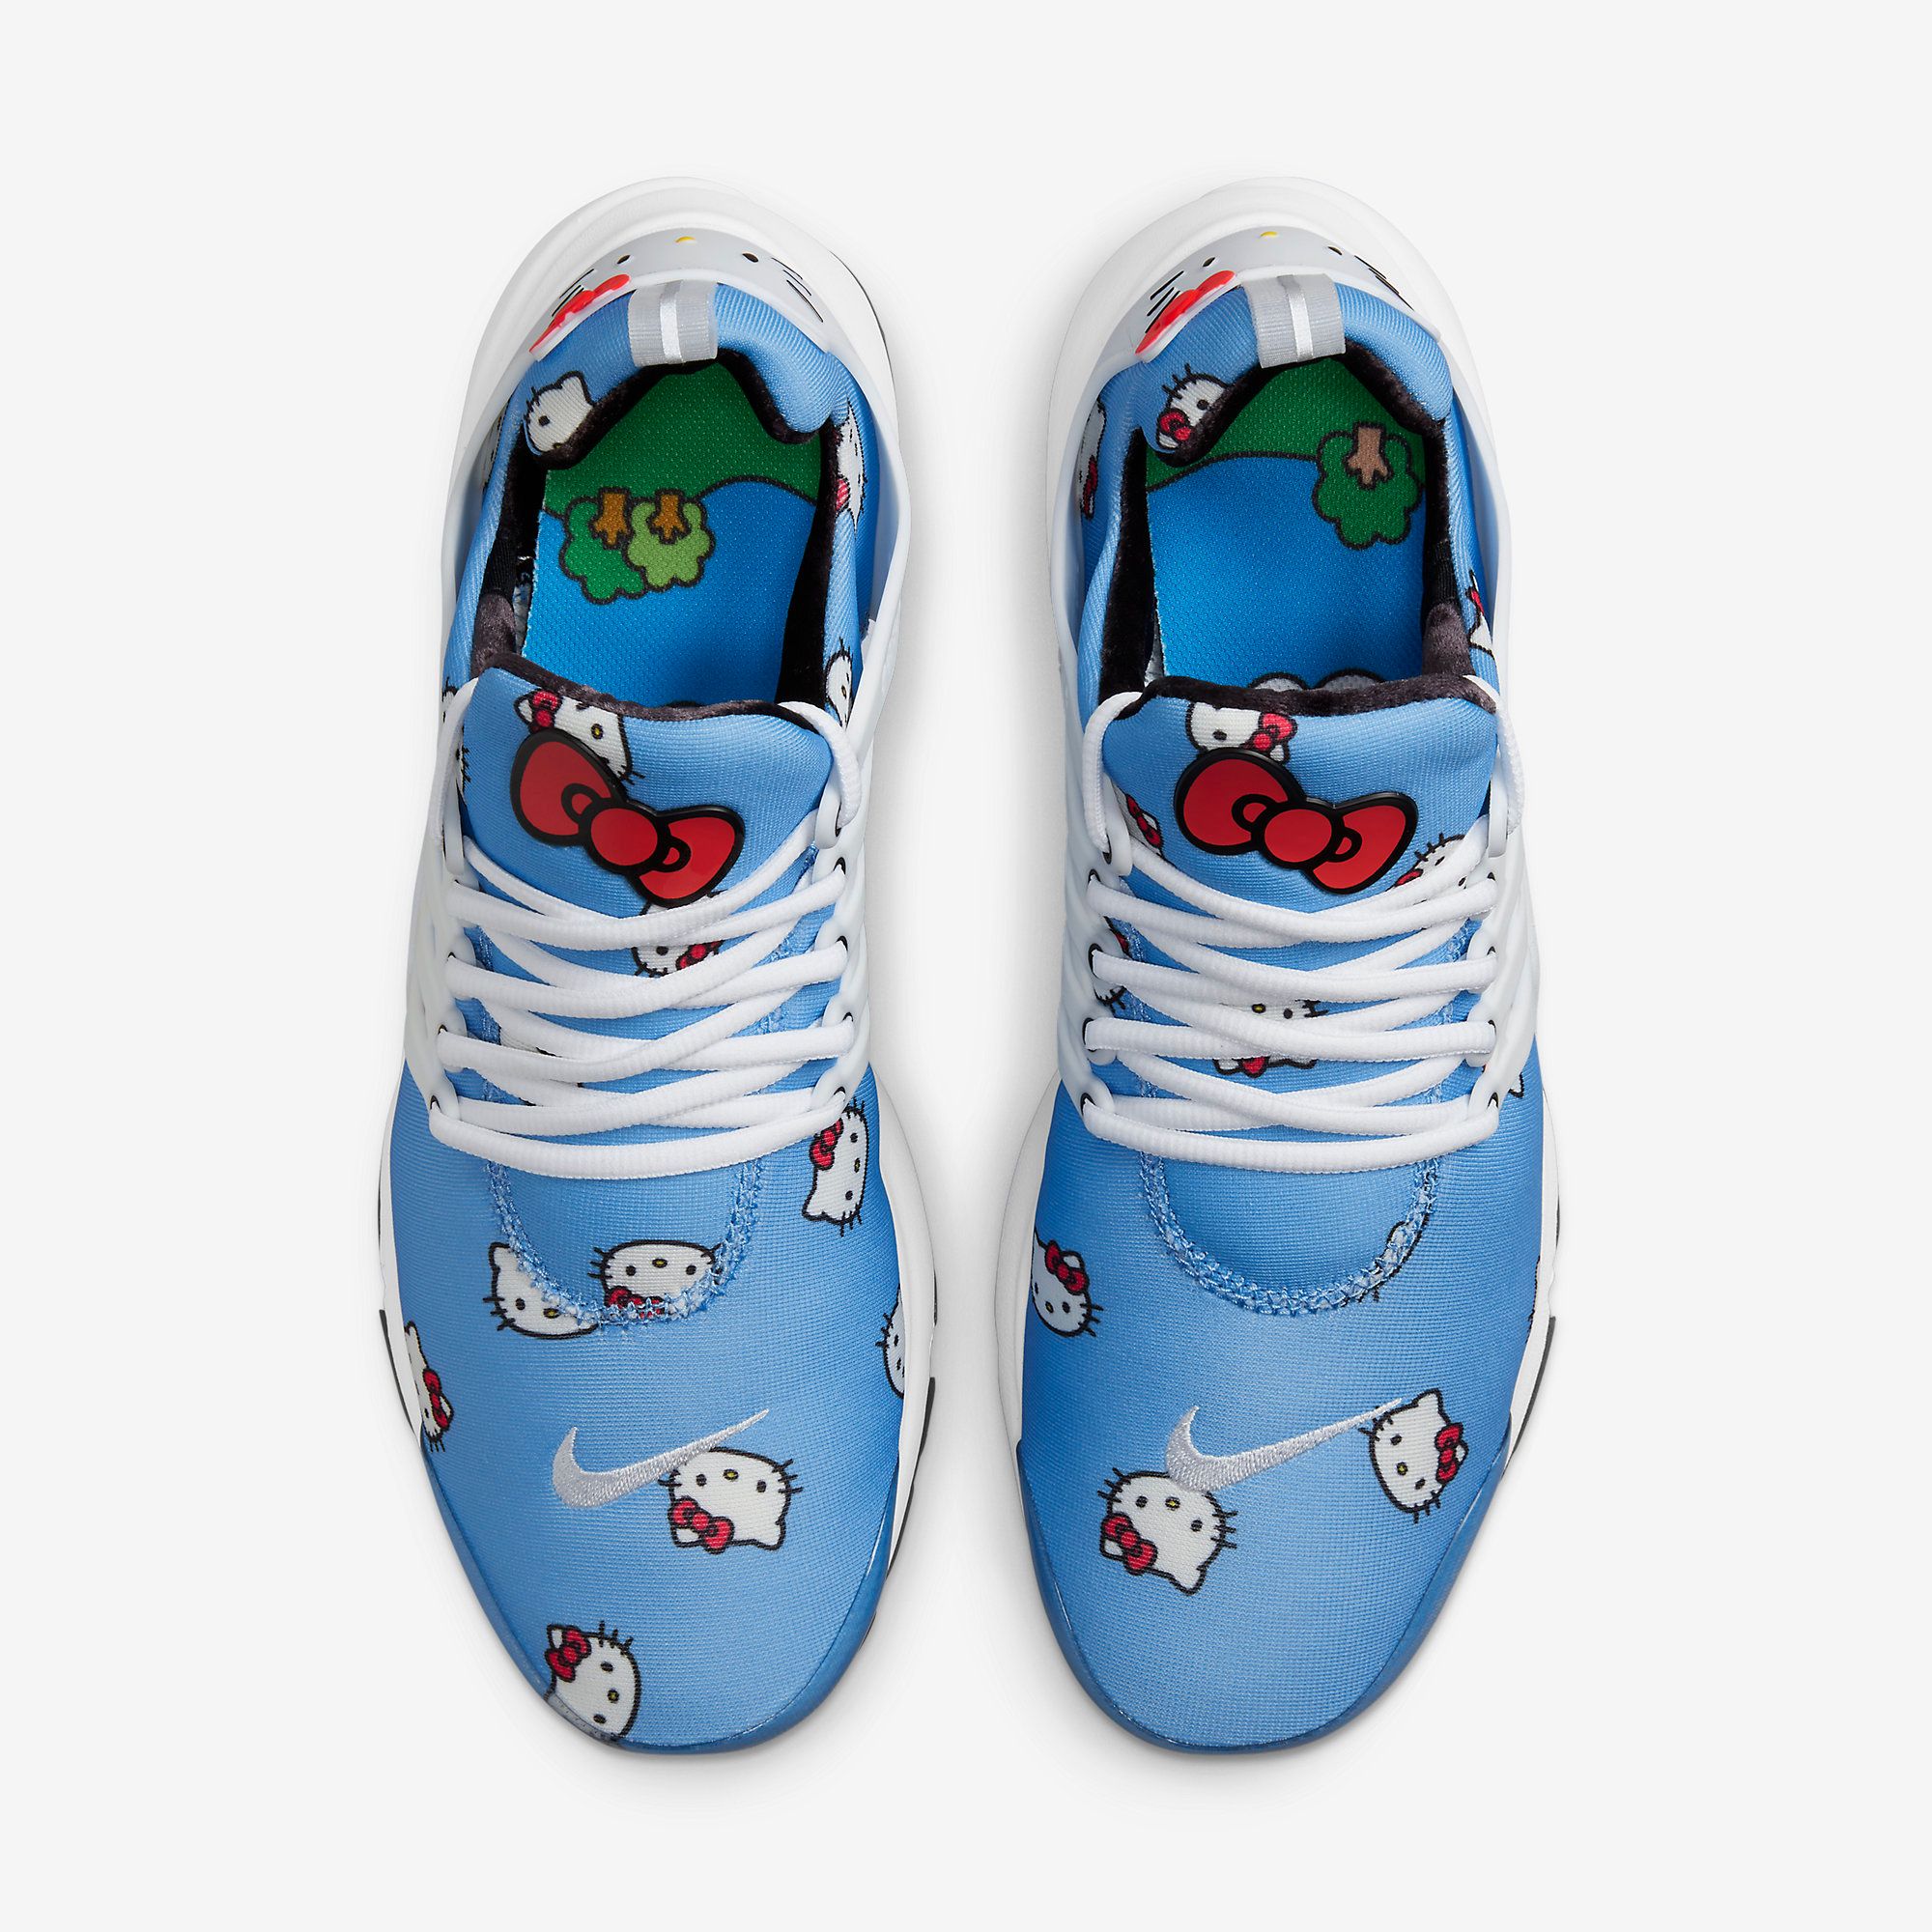  Hello Kitty ® x Nike Air Presto 